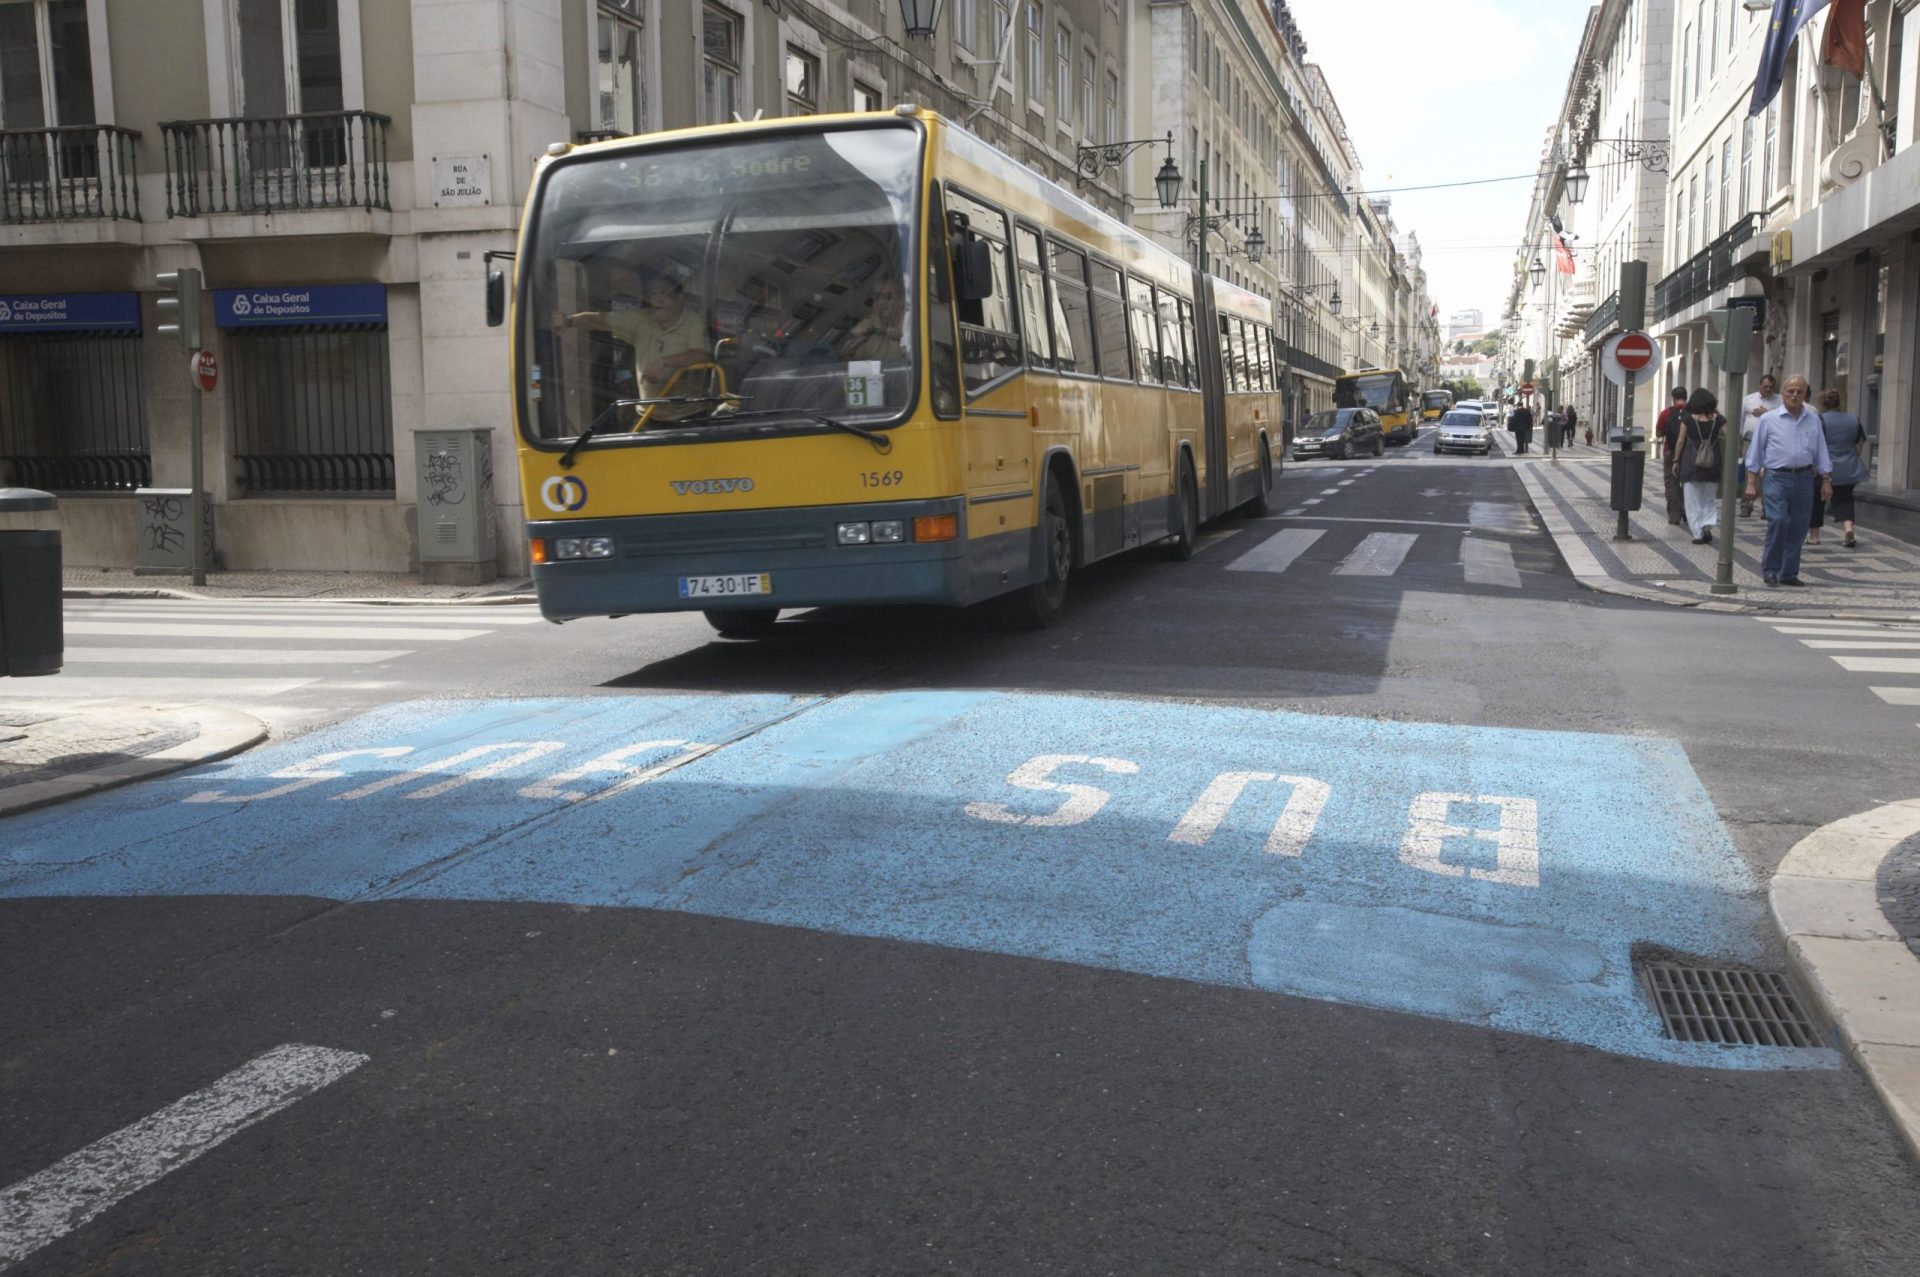 Motociclistas querem andar nas faixas ‘bus’ em Lisboa